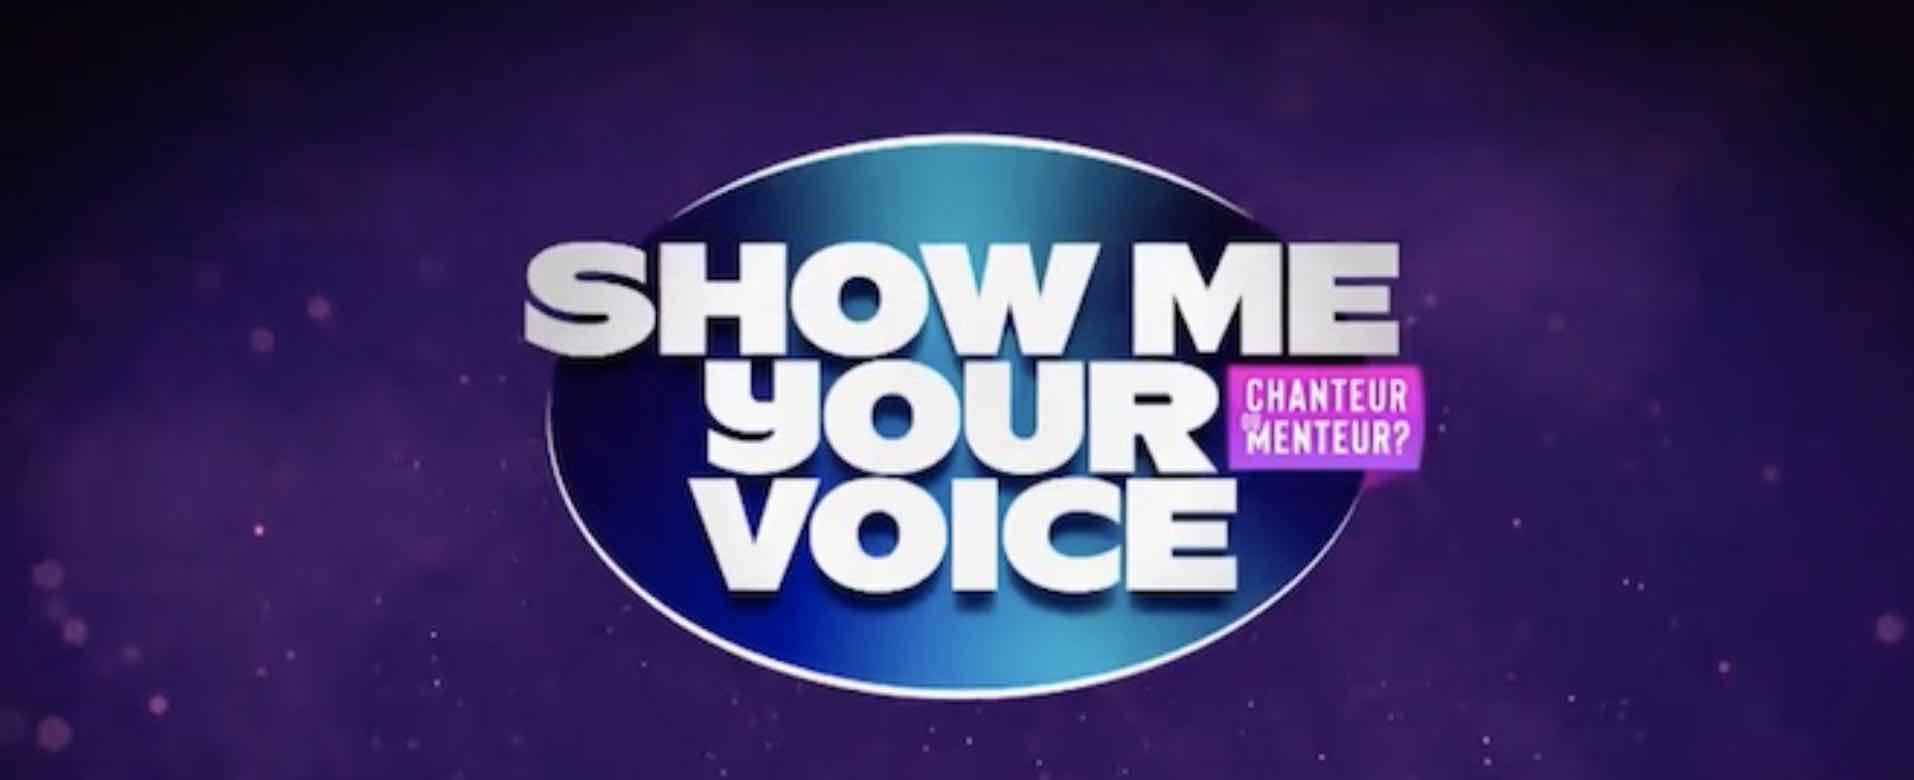 Show me your voice - M6 - chanteur ou menteur -